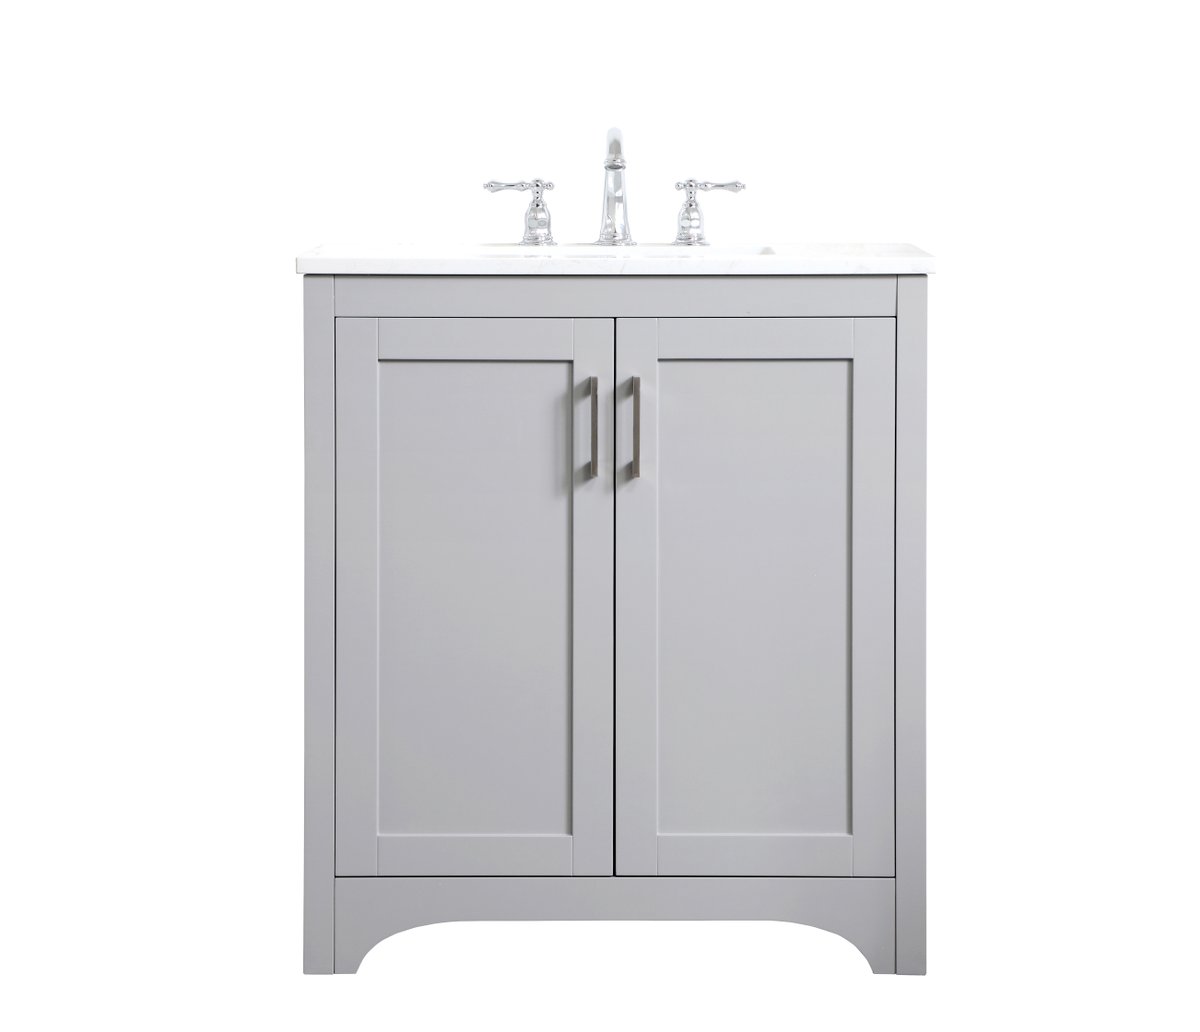 VF17030GR 30" Single Bathroom Vanity in Grey